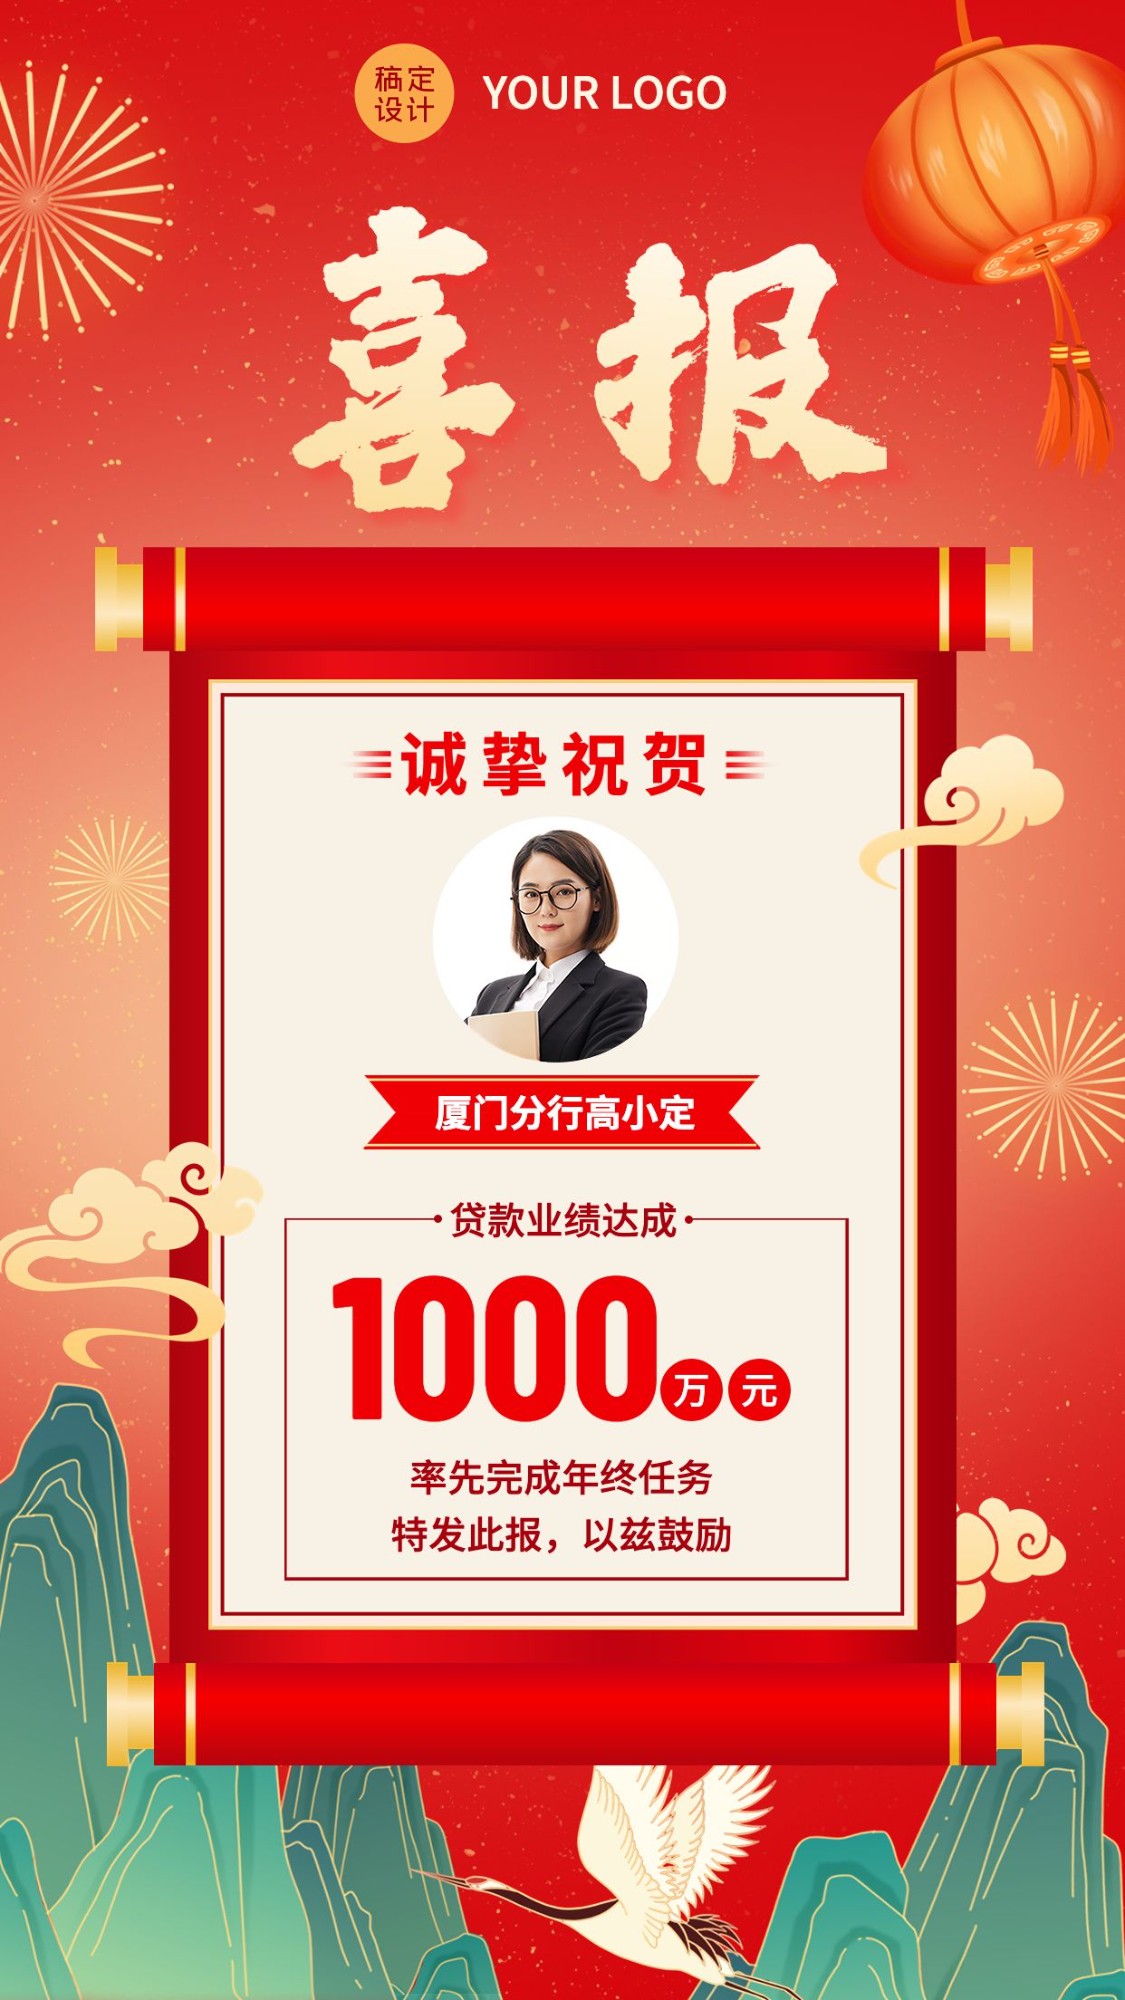 金融保险贷款业绩销售表彰喜报人物中国风插画手机海报预览效果